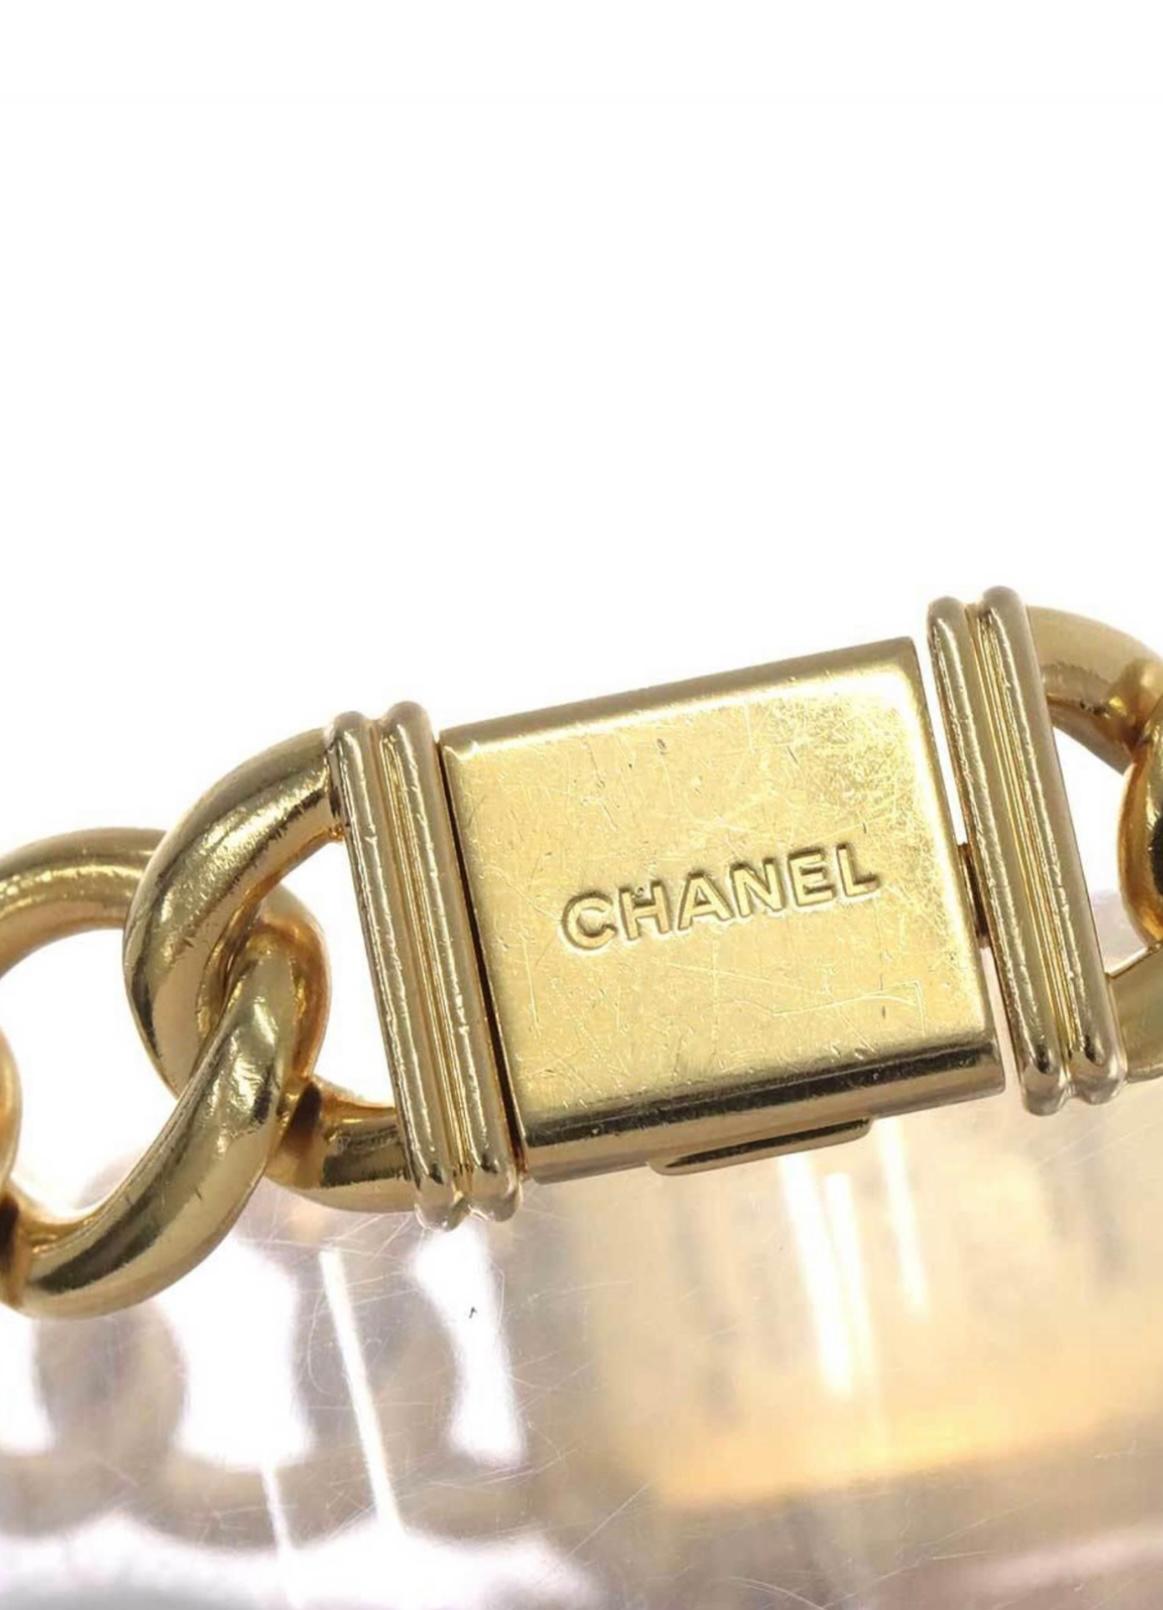 Marque : Chanel

Modèle : Premier

Matériau du boîtier : Or jaune

Cadran : noir laqué

Mouvement : Quartz

Poids :  76.3 grammes

Taille du bracelet : 14,6 cm

Accessoires : Brilliance Jewels Garantie de deux ans

Boîte Chanel